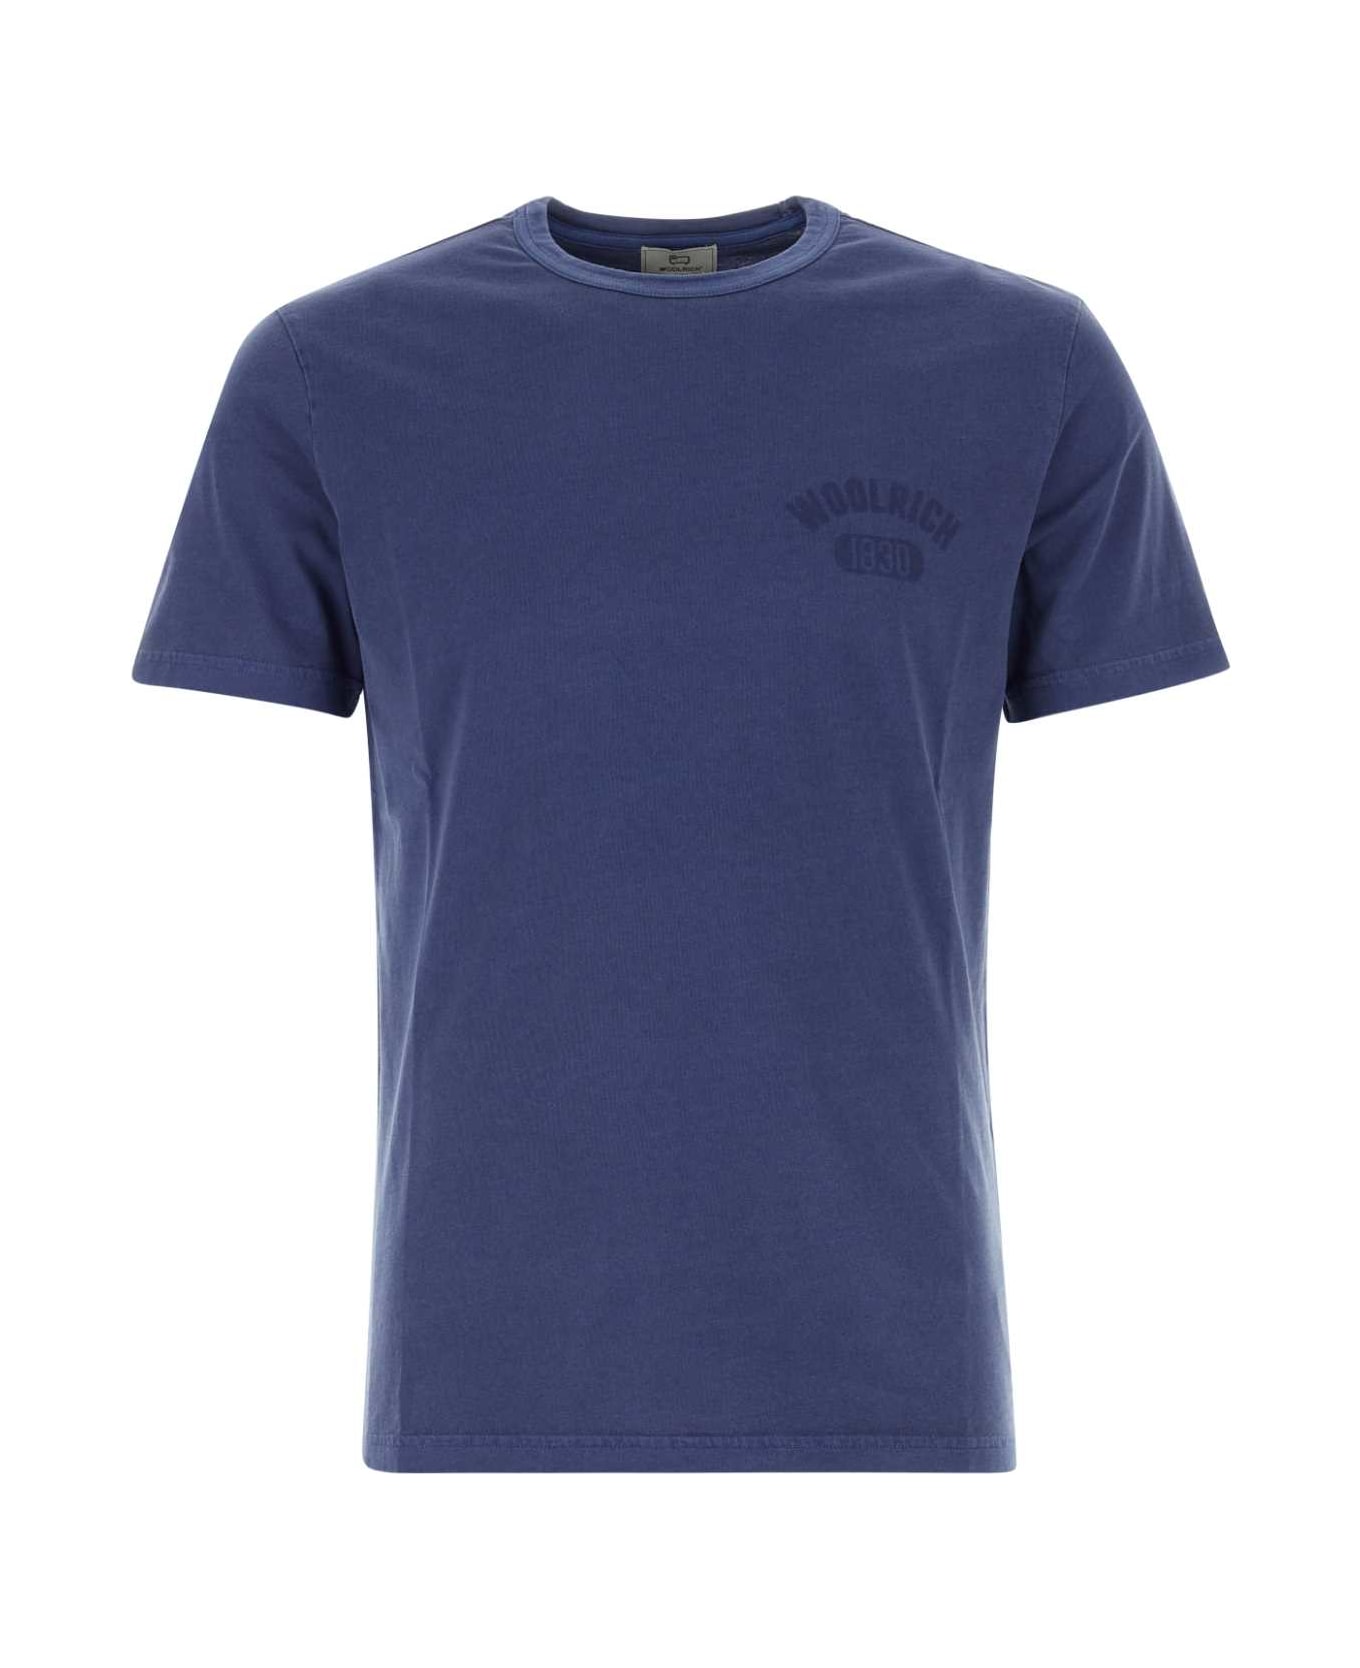 Woolrich Blue Cotton T-shirt - 31108